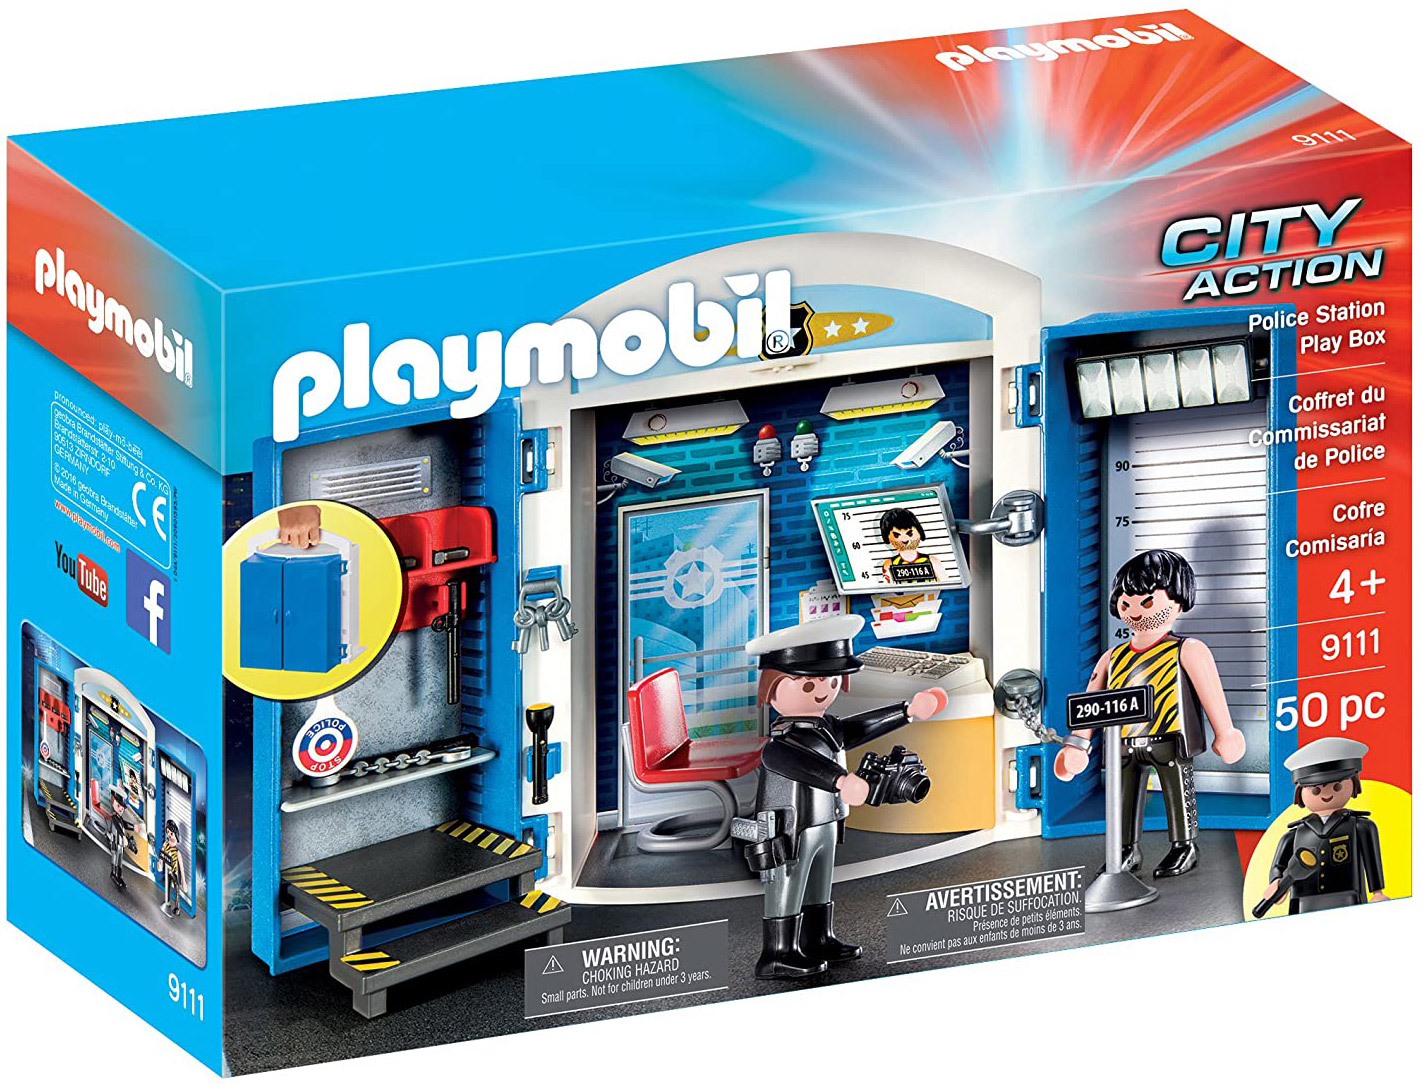 Playmobil City Action 9111 pas cher, Coffret du commissariat de police